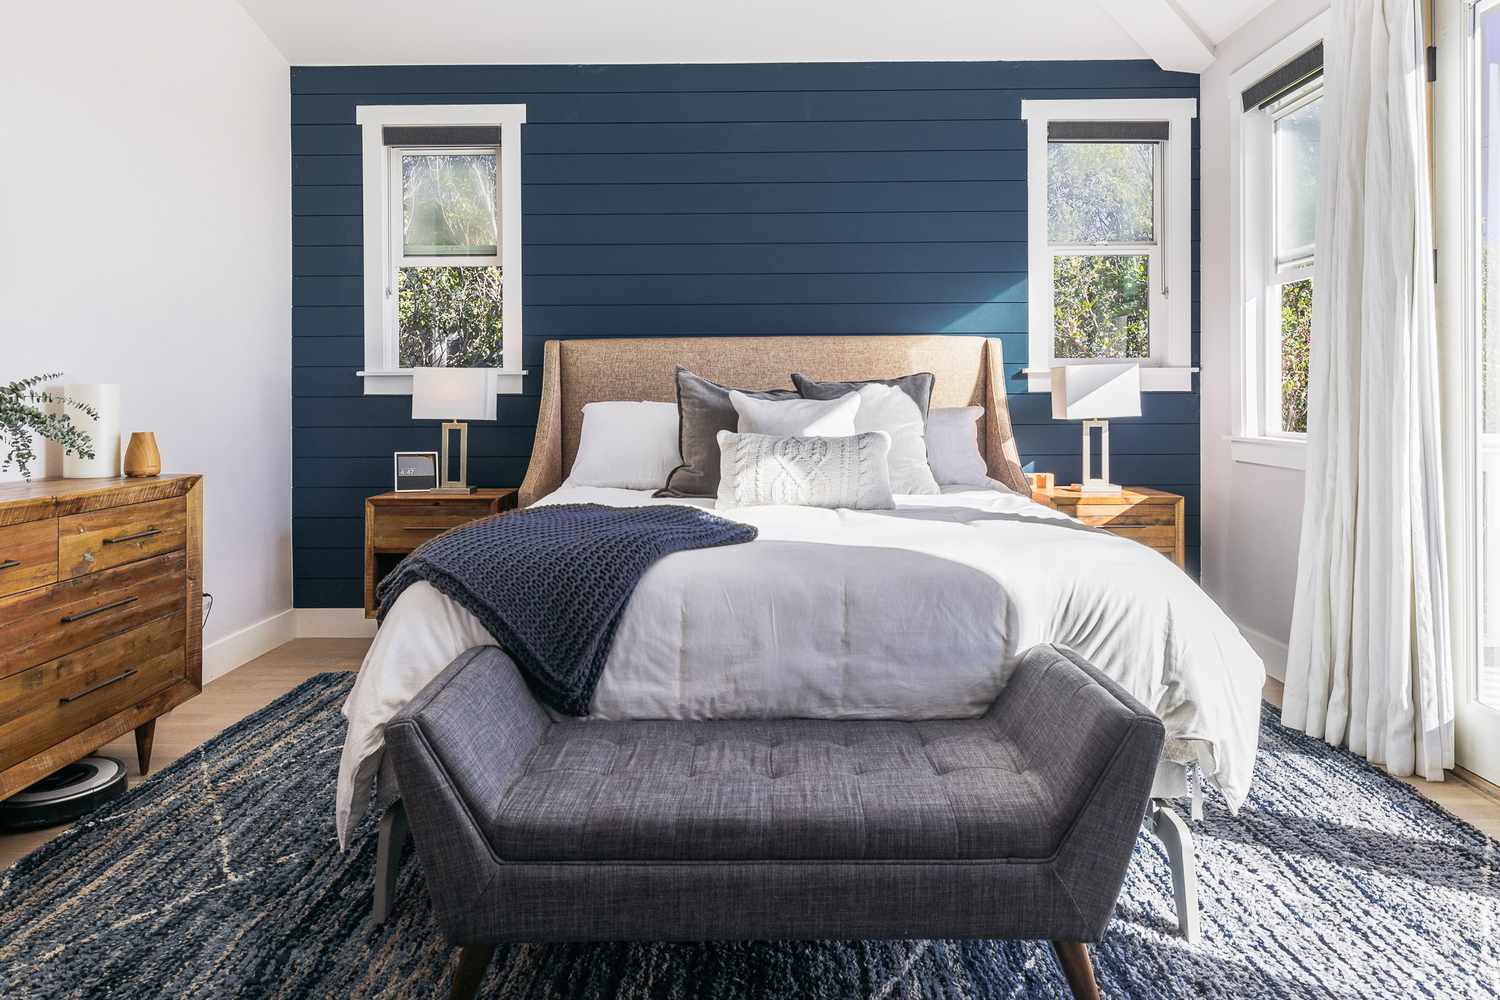 Stimmungsvolles Schlafzimmer mit blauen Schiffswänden, blauer und grauer Bettwäsche und grauer Bank im Vordergrund